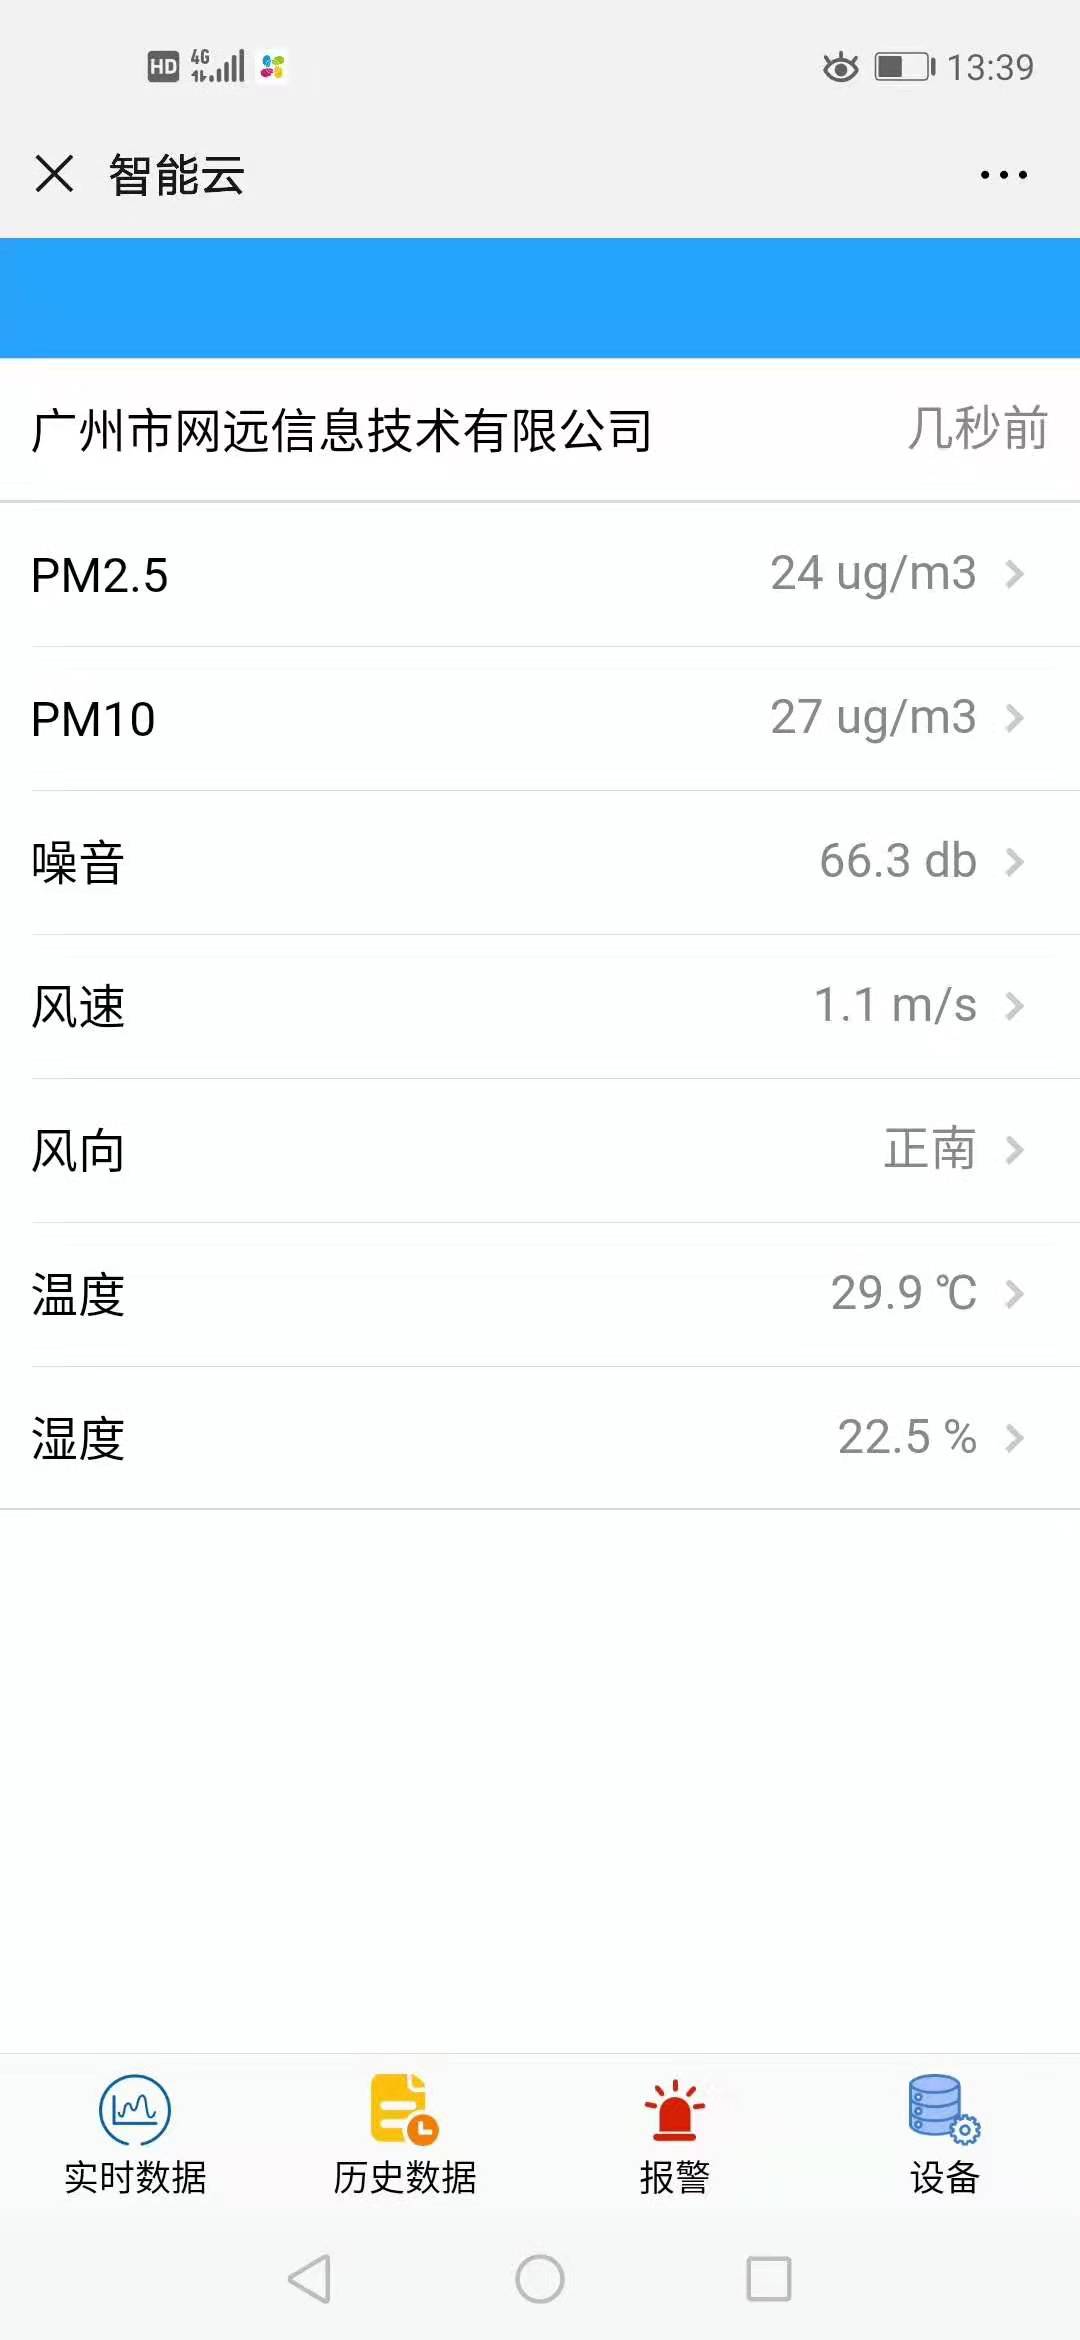 广州大学城环湖西路安装扬尘噪音在线监测系统顺利完工